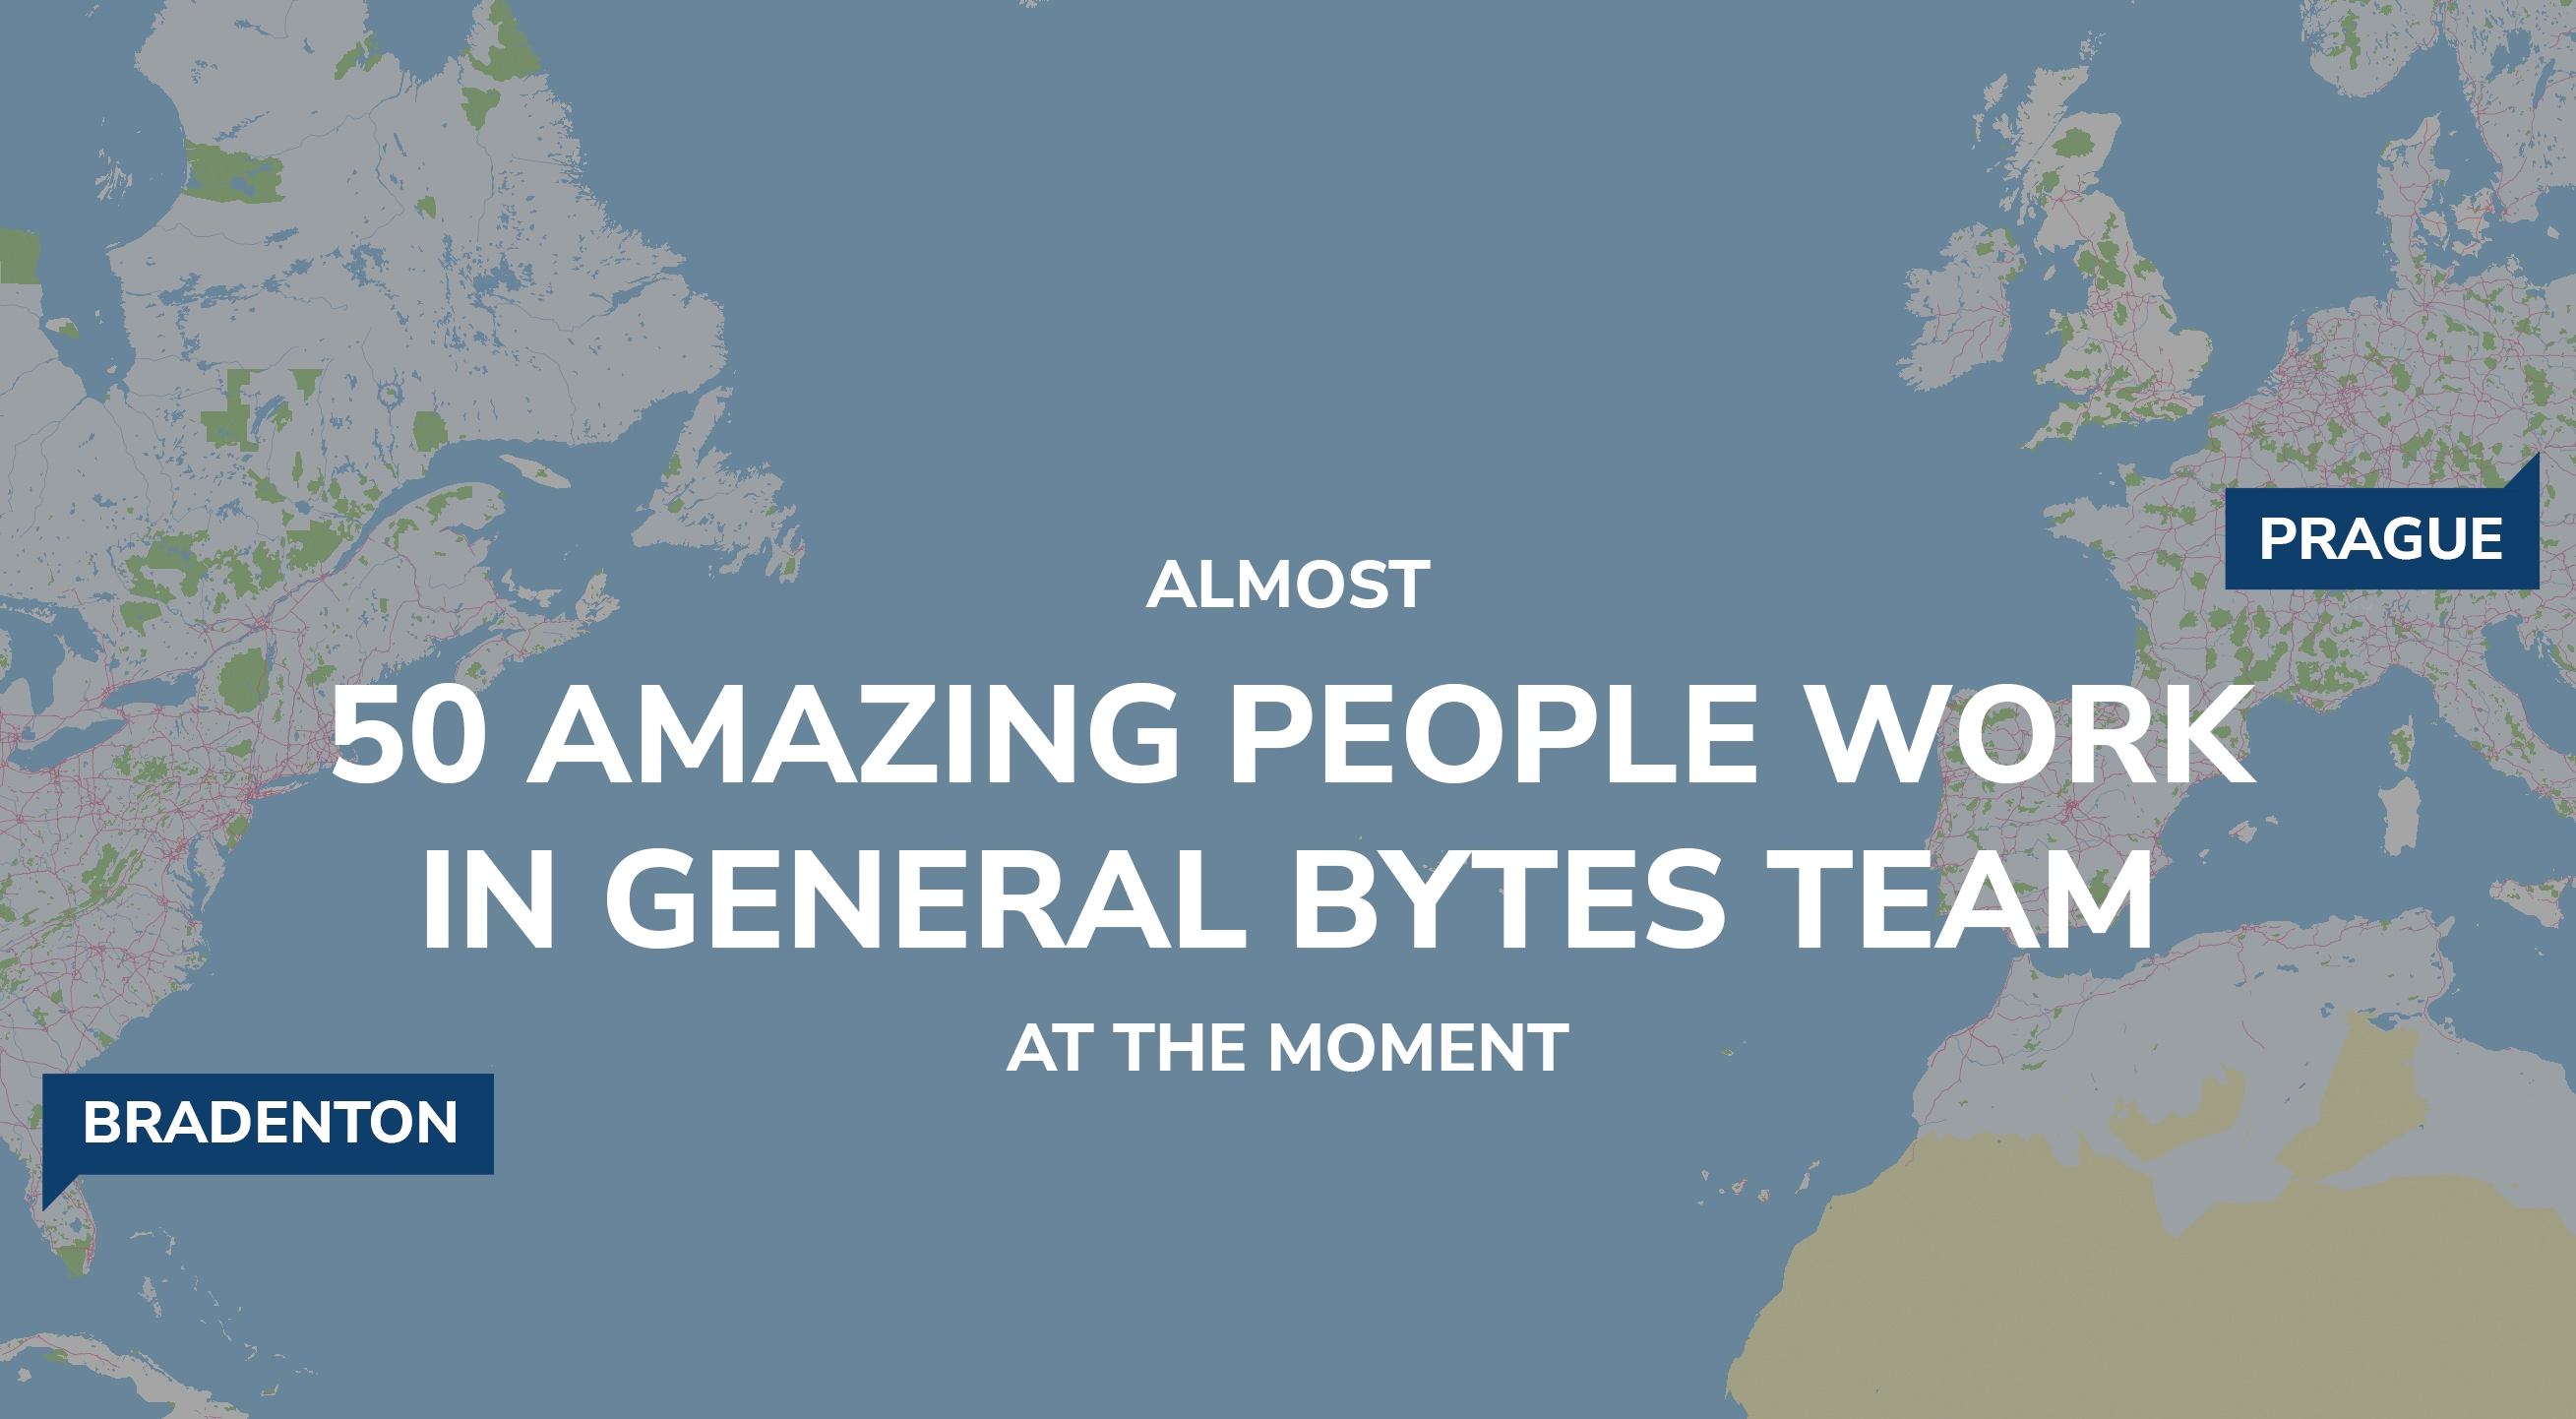 50 amazing people work in GENERAL BYTES team